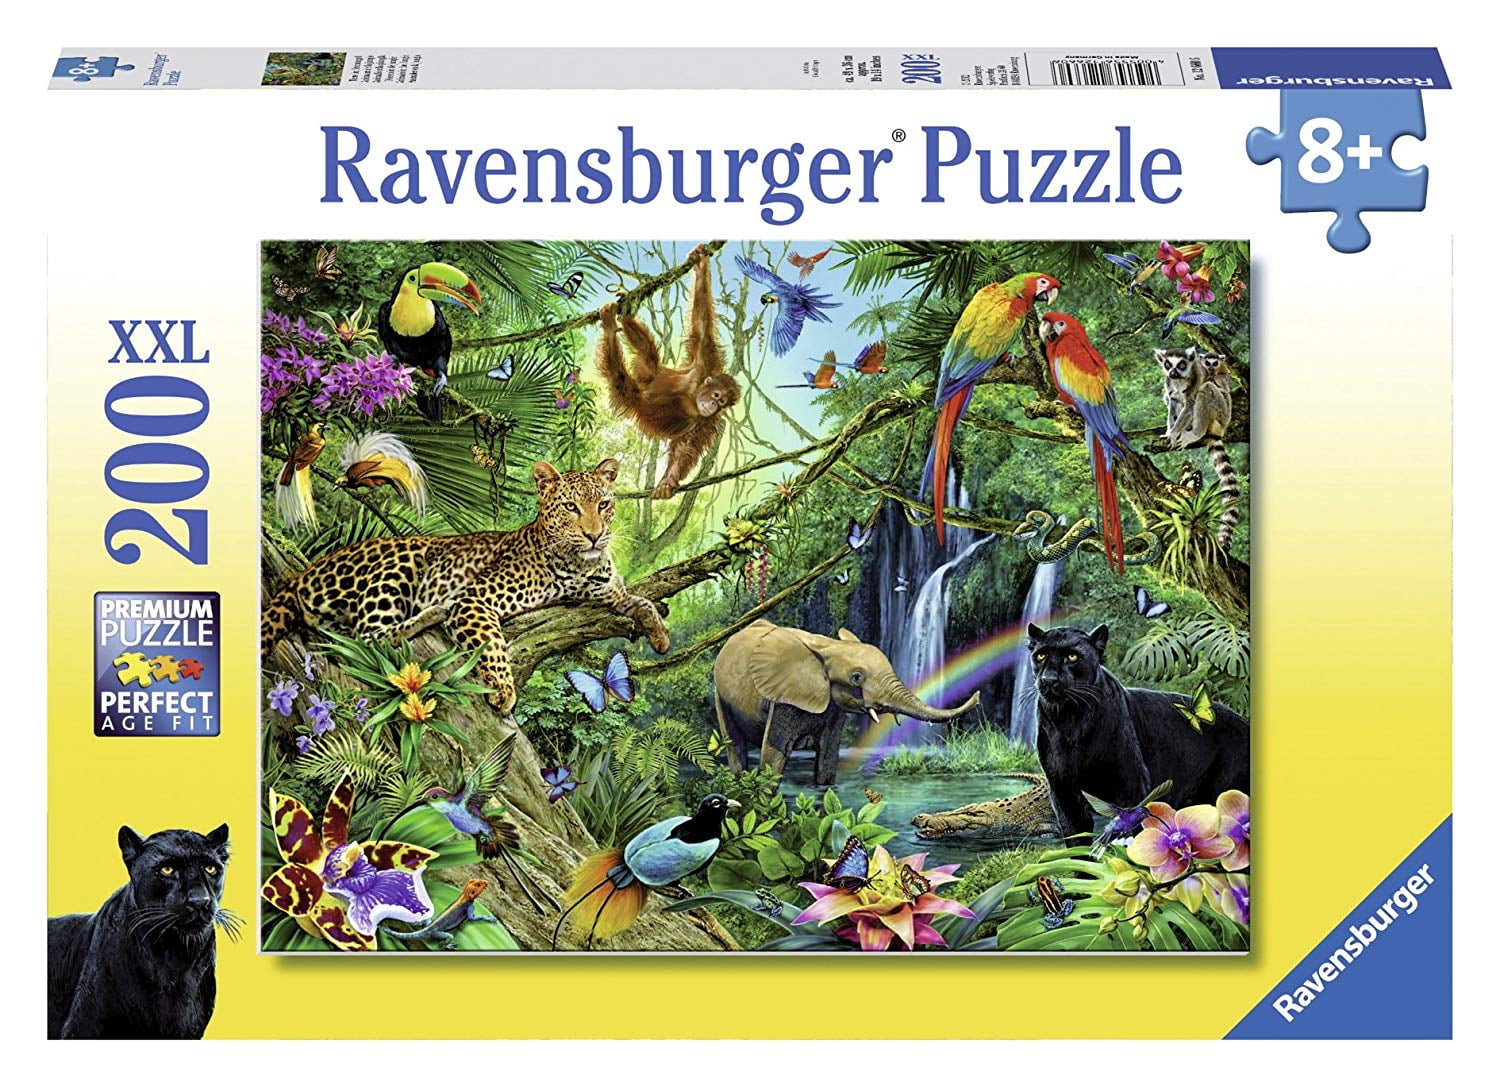 Ravensburger puzzle 100 XXL pieces Wild Jungle complete